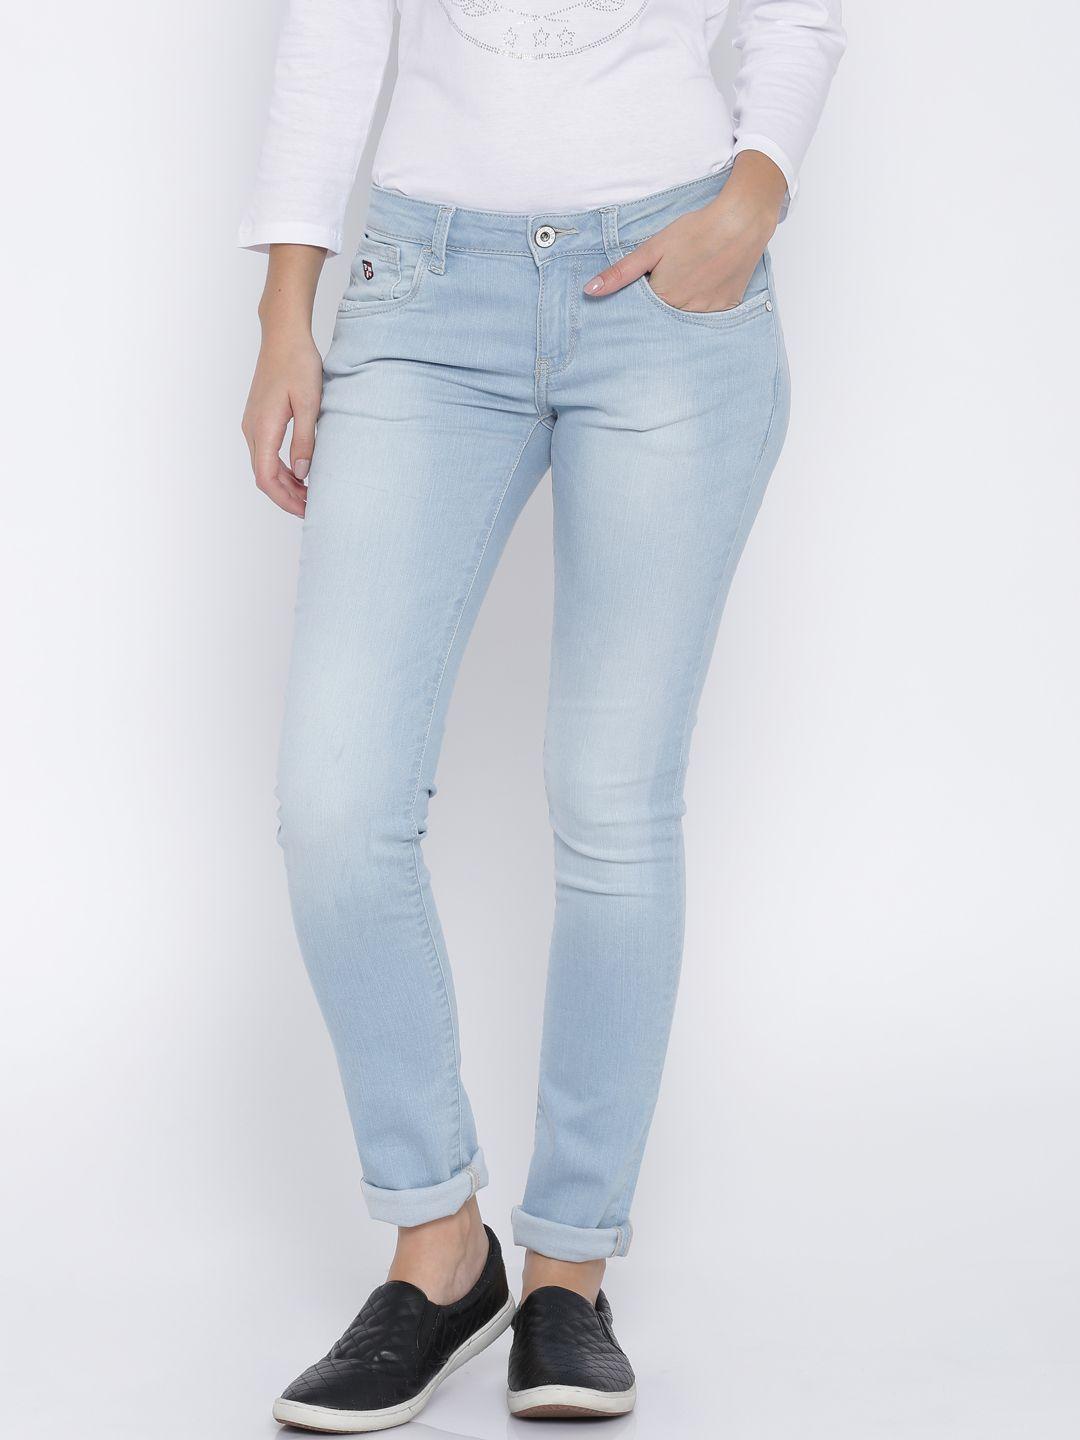 u.s. polo assn. women blue super-skinny jeans